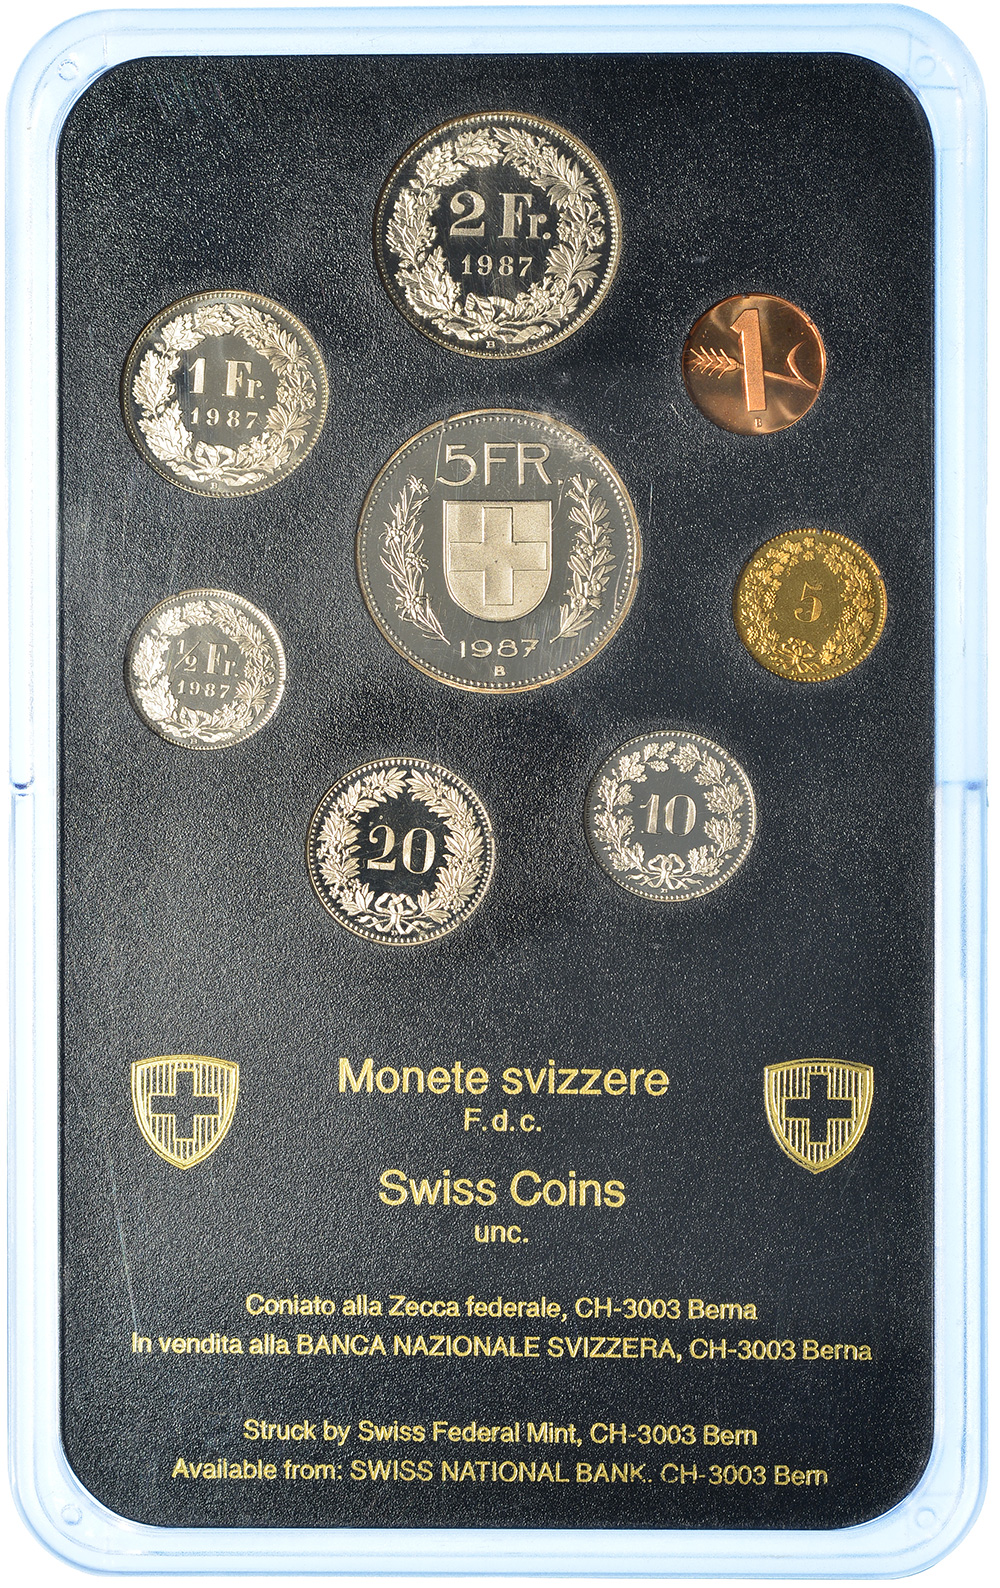 Münzensatz, 1987, Stempelglanz, Kupfer/Nickel